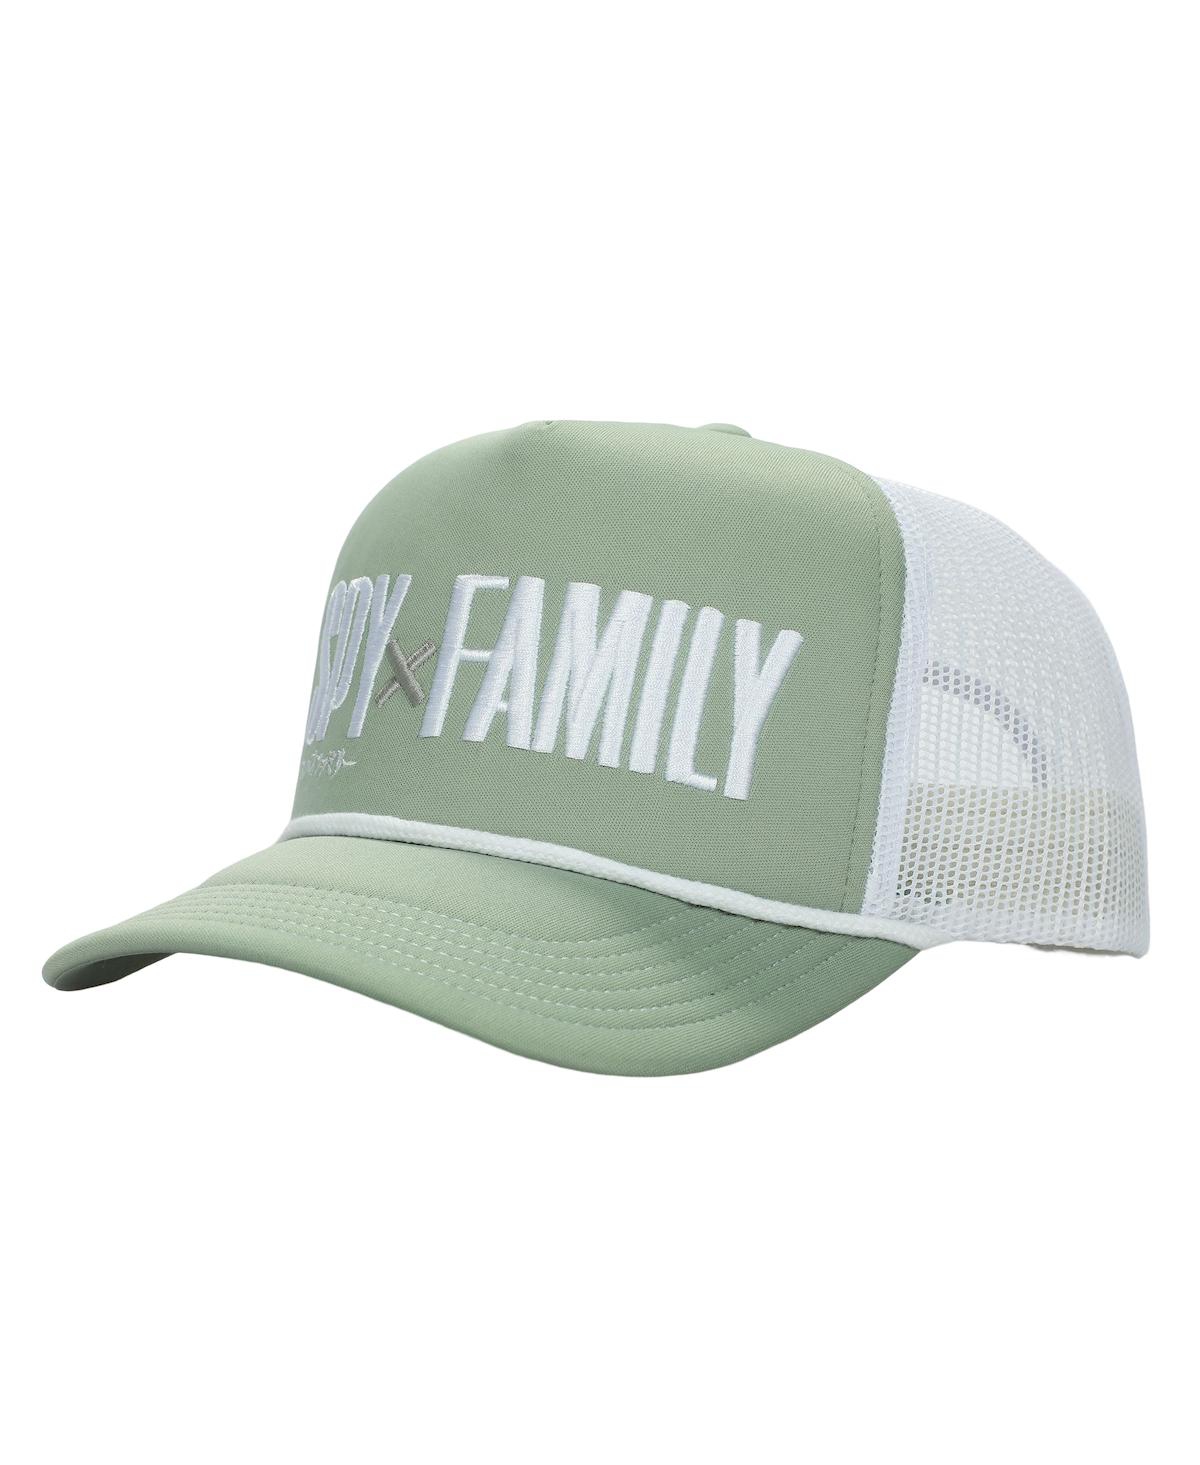 Men's Logo Green Foam Trucker Hat - Multicolored